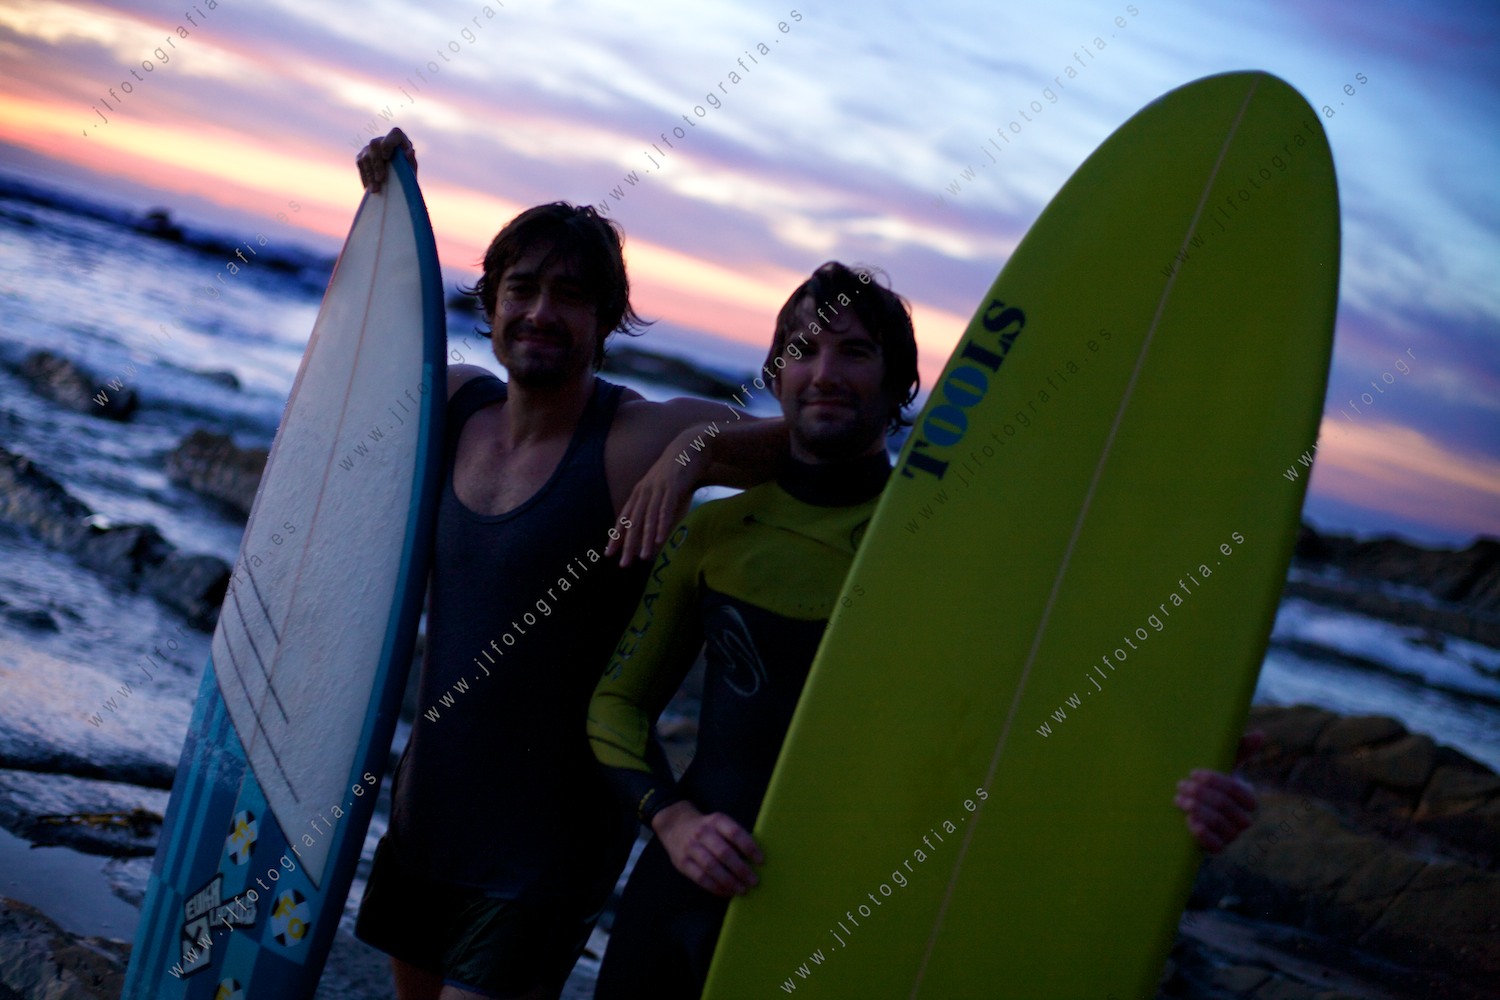 Posado, retrato de dos surfistas al final de la jornada, casi sin luz en el cielo